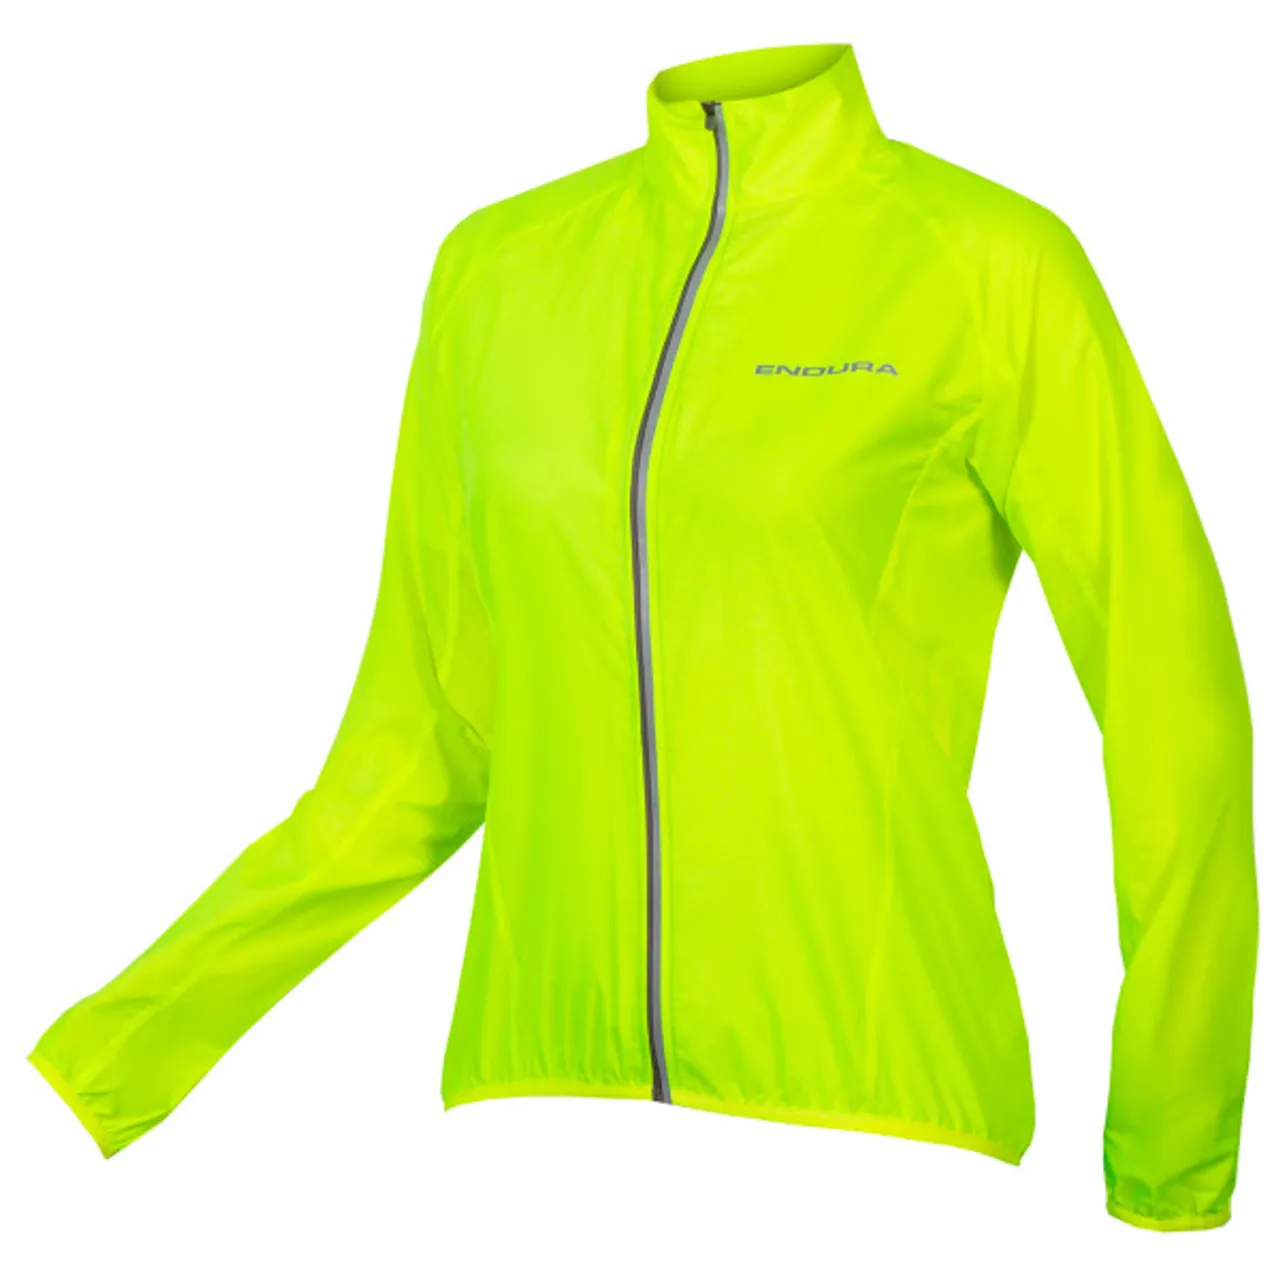 Endura - Women's Pakajak - Cycling jacket